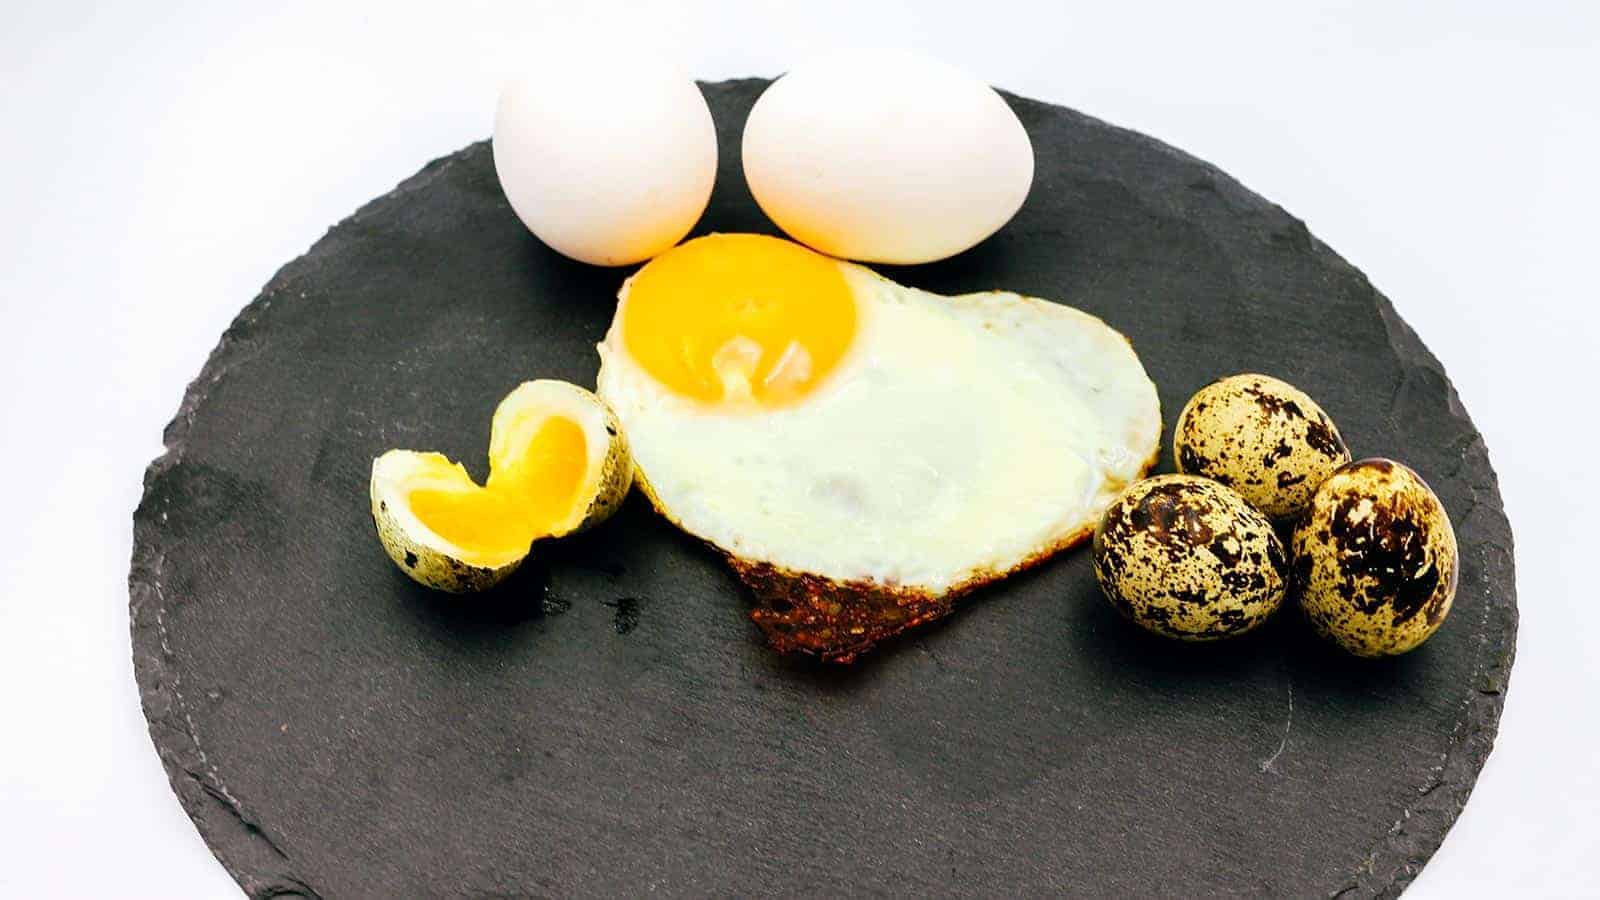 Eier in der Fütterung, Dürfen Hunde Eier Fressen?, Eier füttern, Hühnerei im Futter, Darf die Schale mitgegessen werden, Hund gesund ernähren